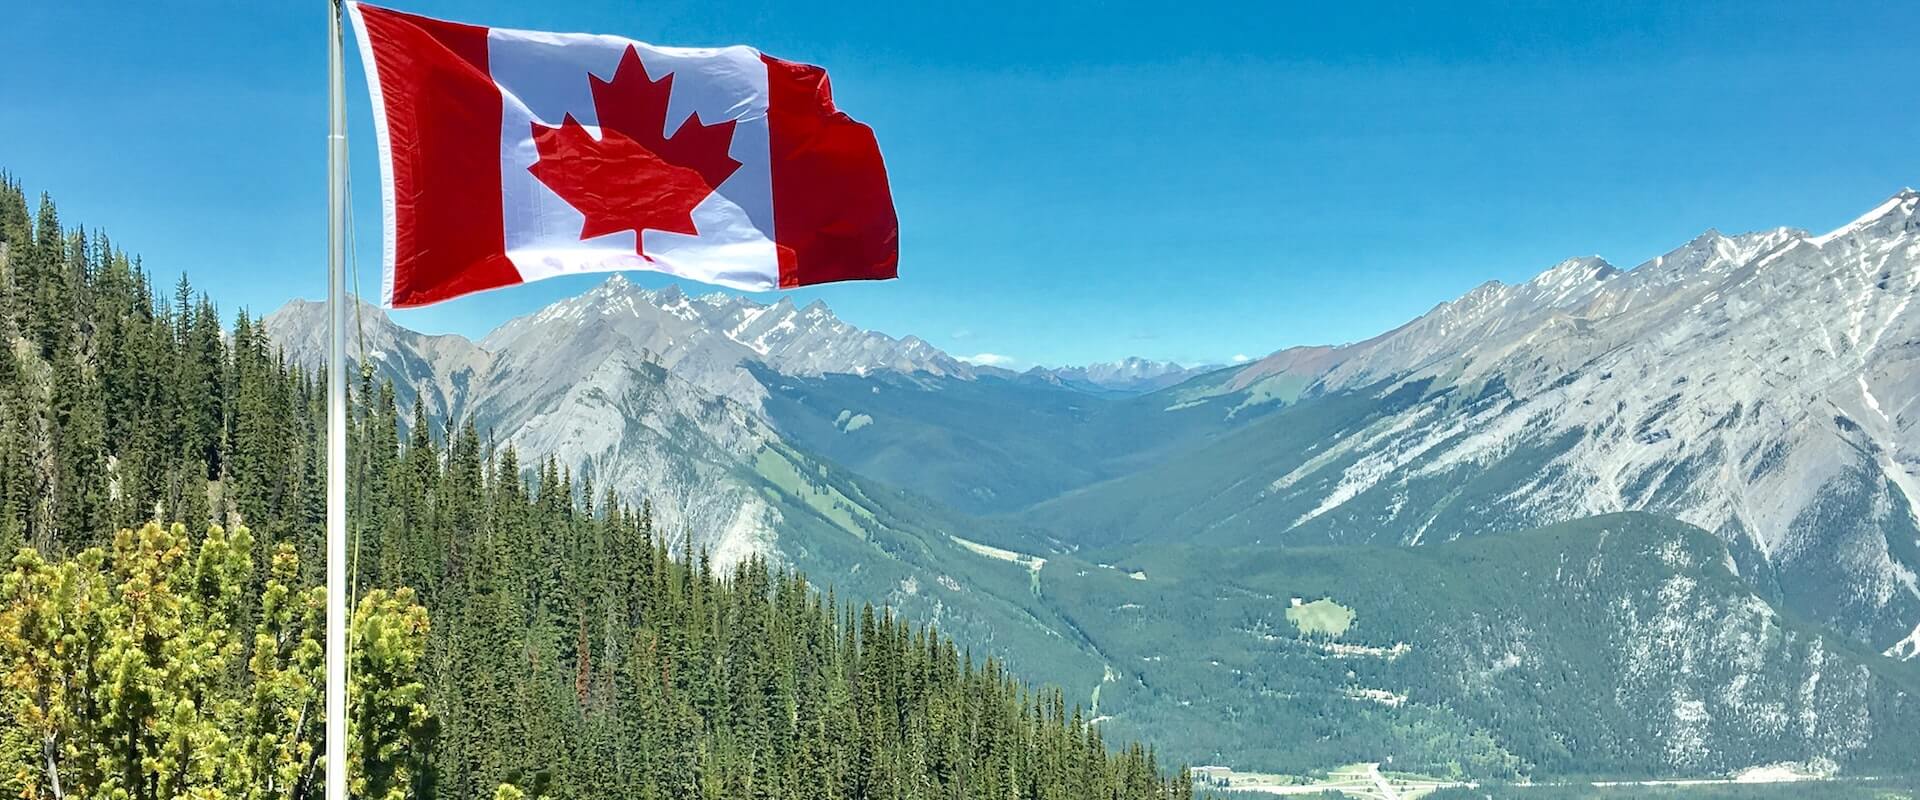 Paysage et drapeau canadien